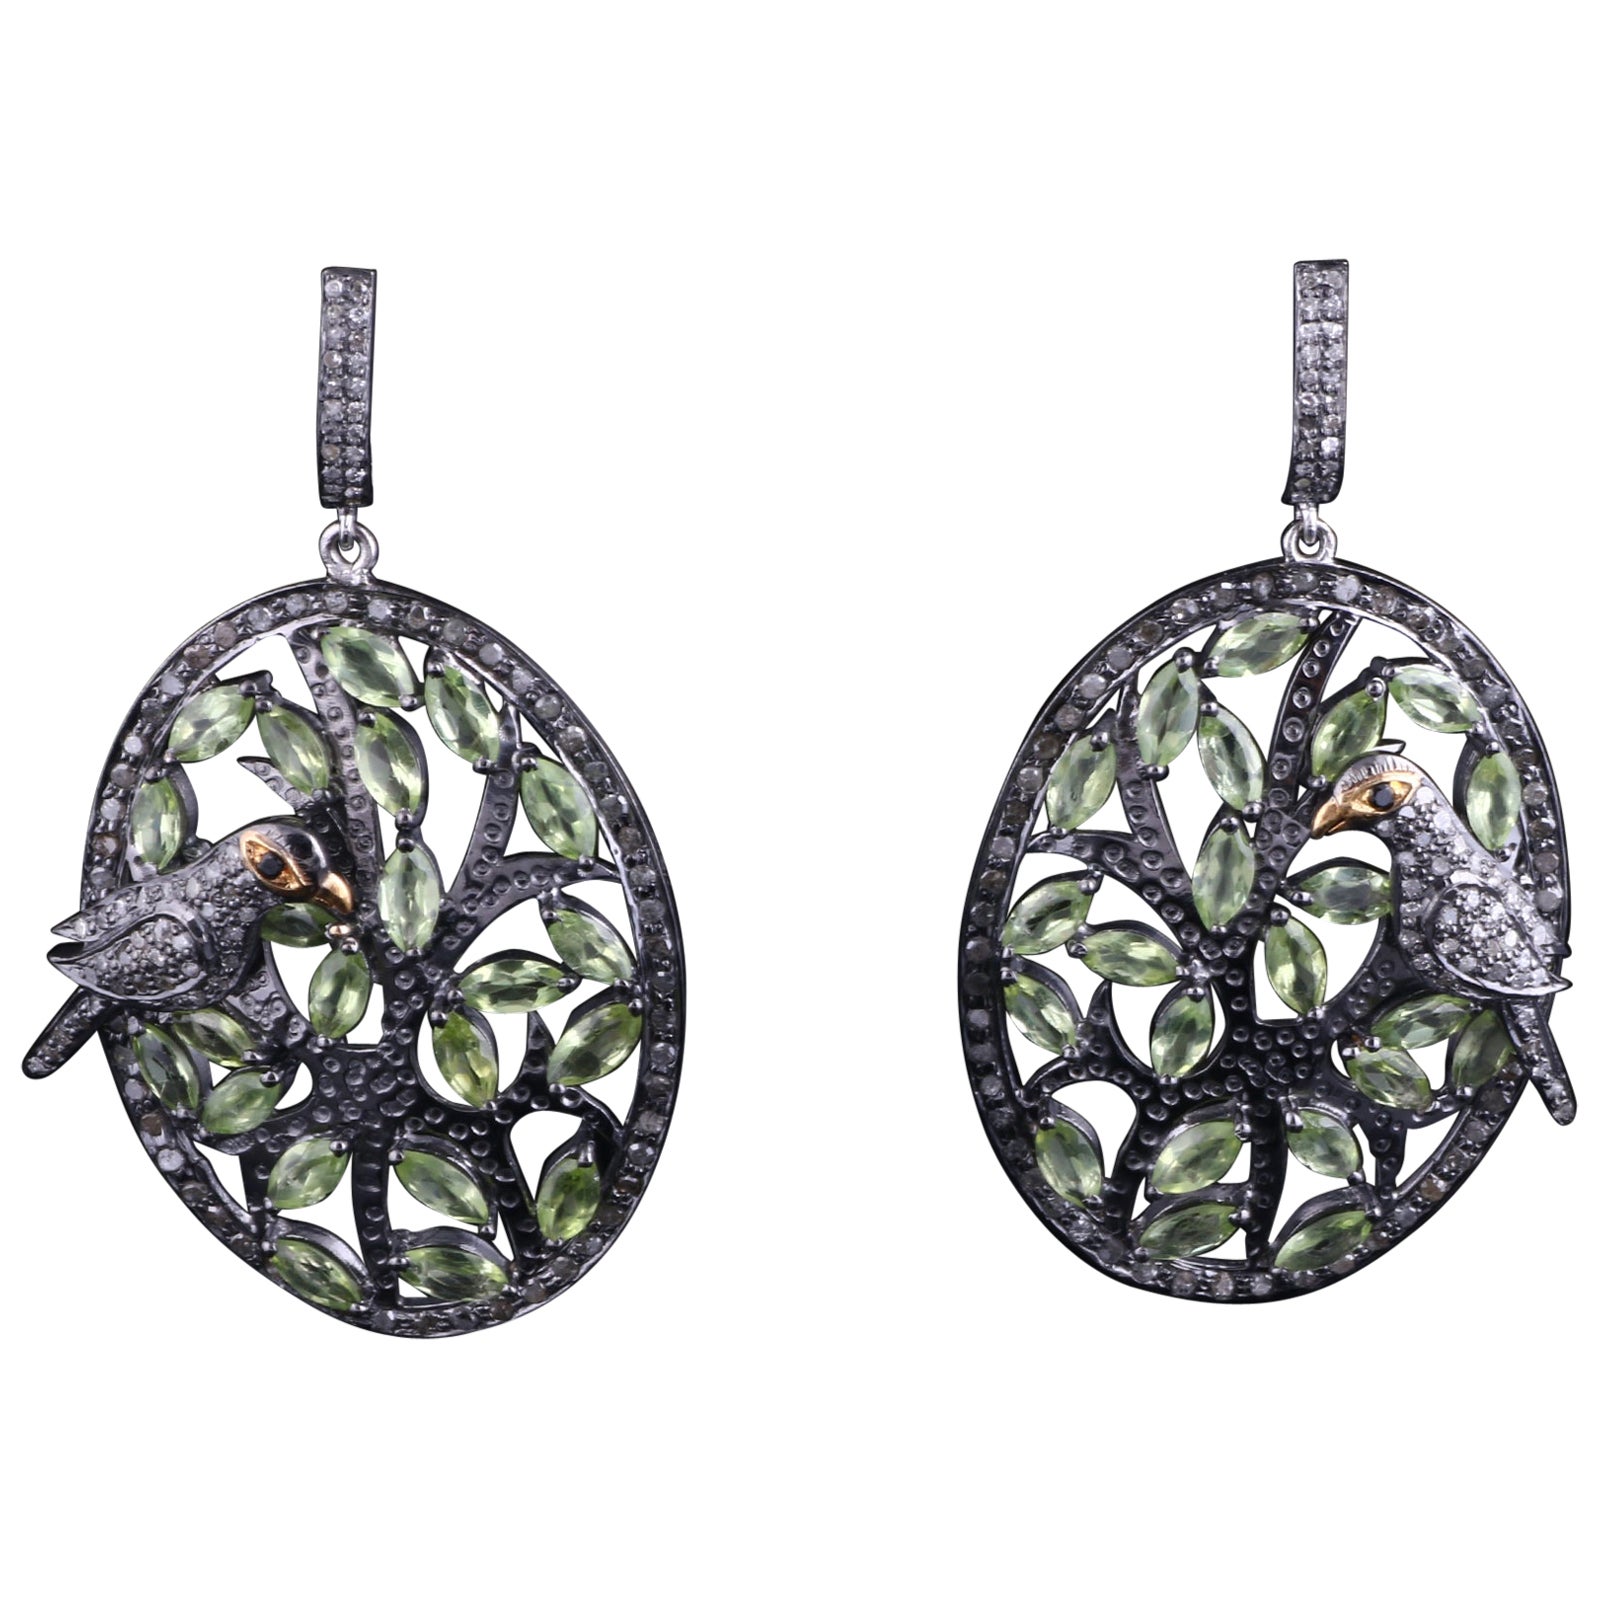 Silber-Ohrringe im viktorianischen Stil mit Diamanten und grünen Peridot-Edelsteinen